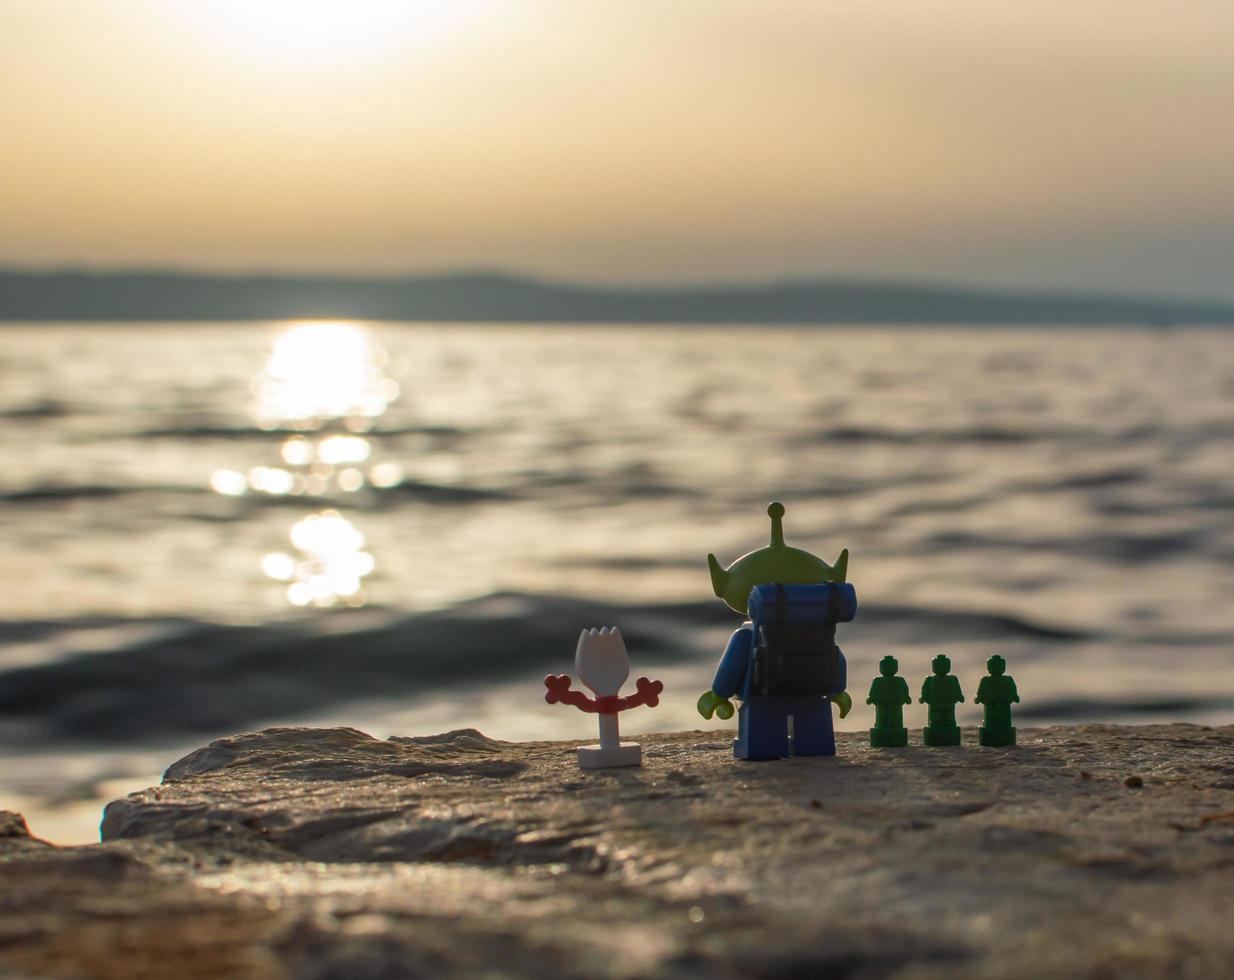 warschau - 2020 - minifiguren met lego-speelgoedverhalen kijken naar de zonsondergang foto